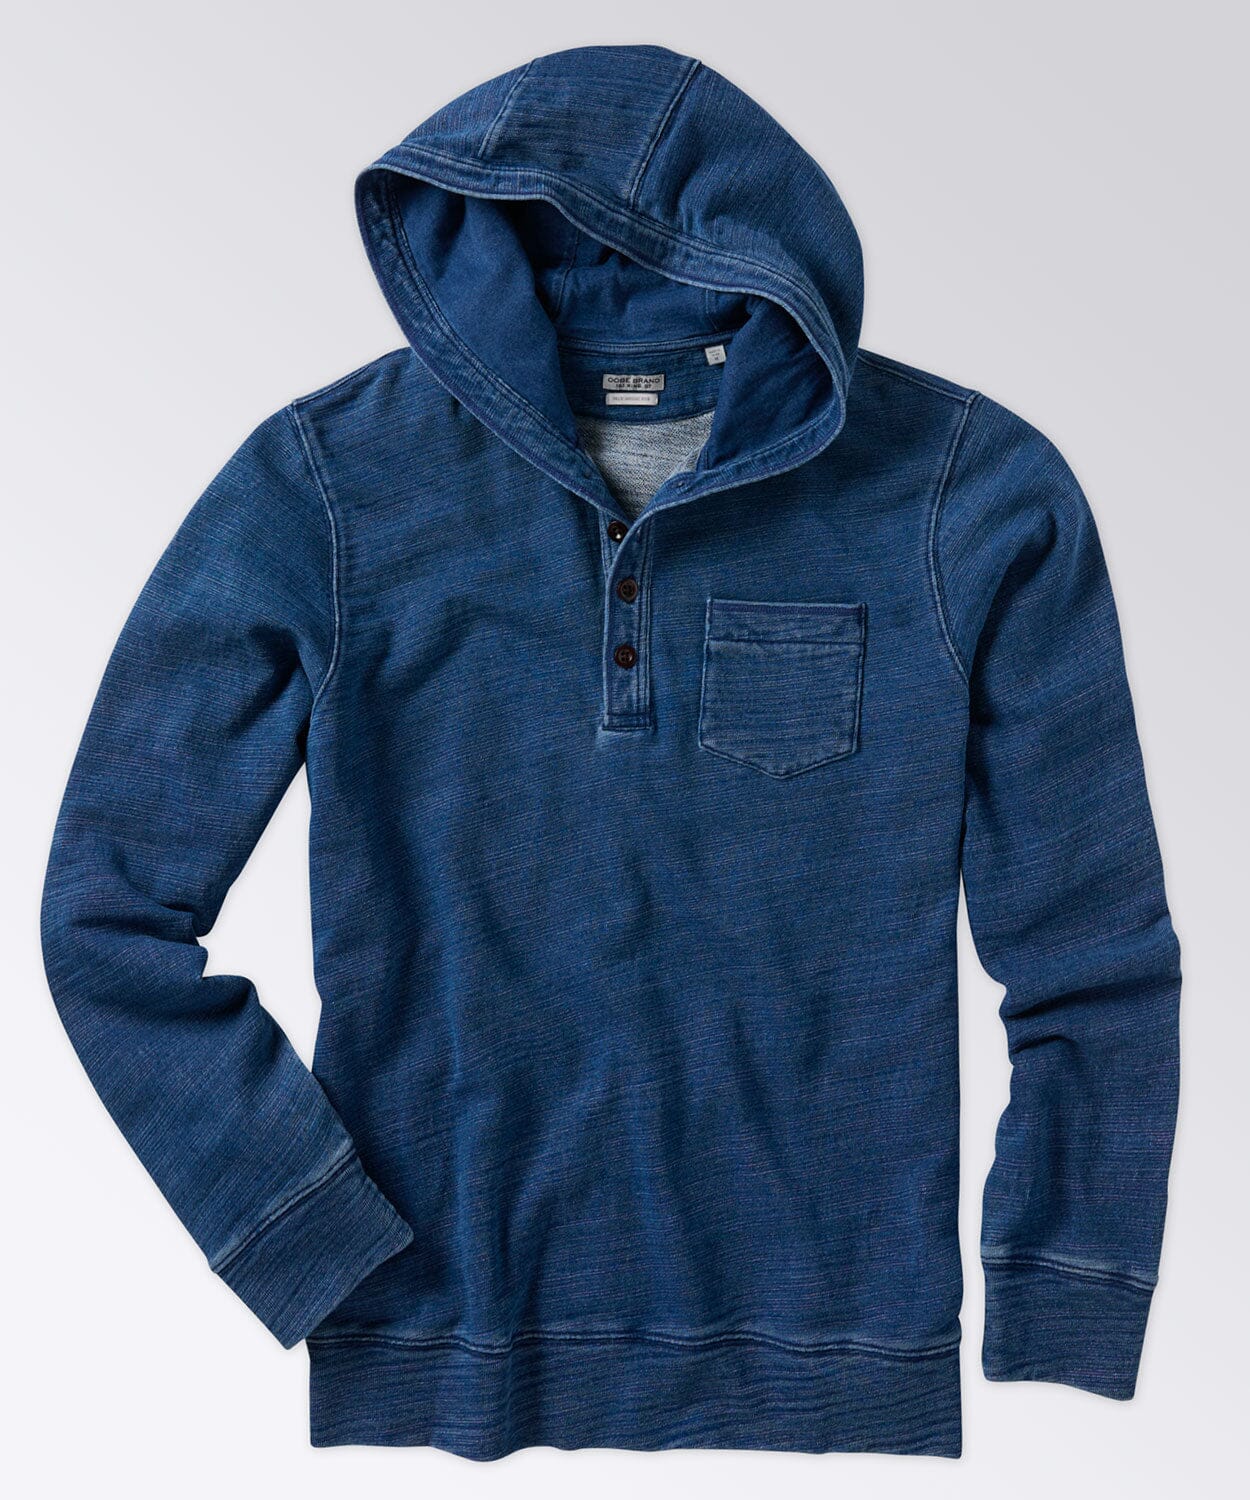 Indigo Blue Collection by OOBE BRAND | Premium Menswear | Fertiggardinen